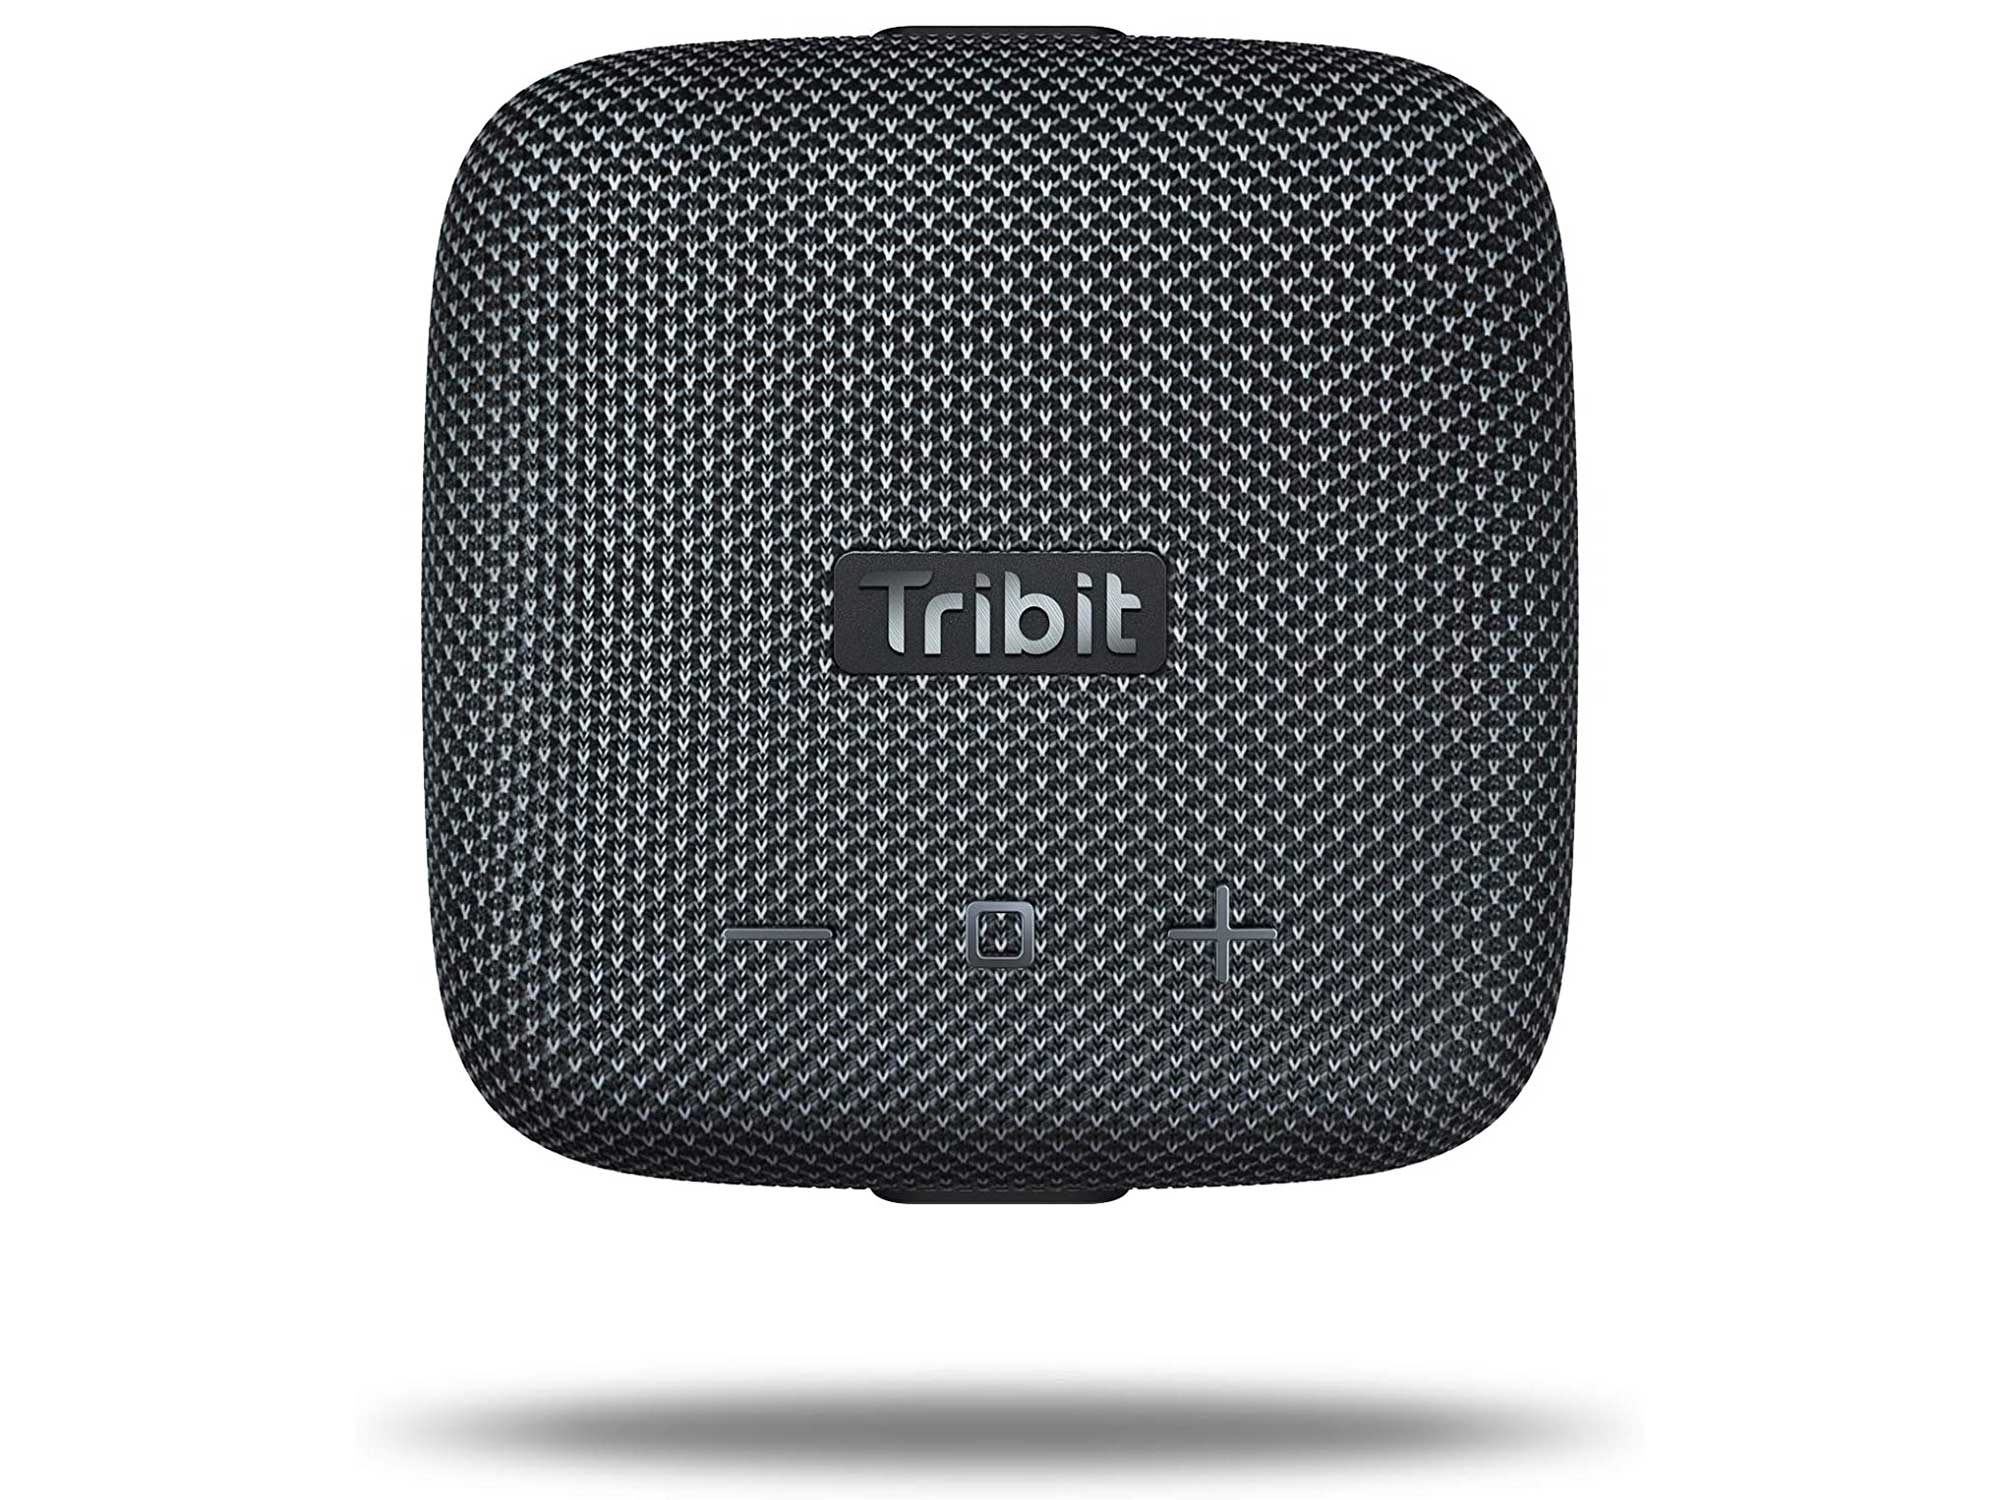 tribit speaker